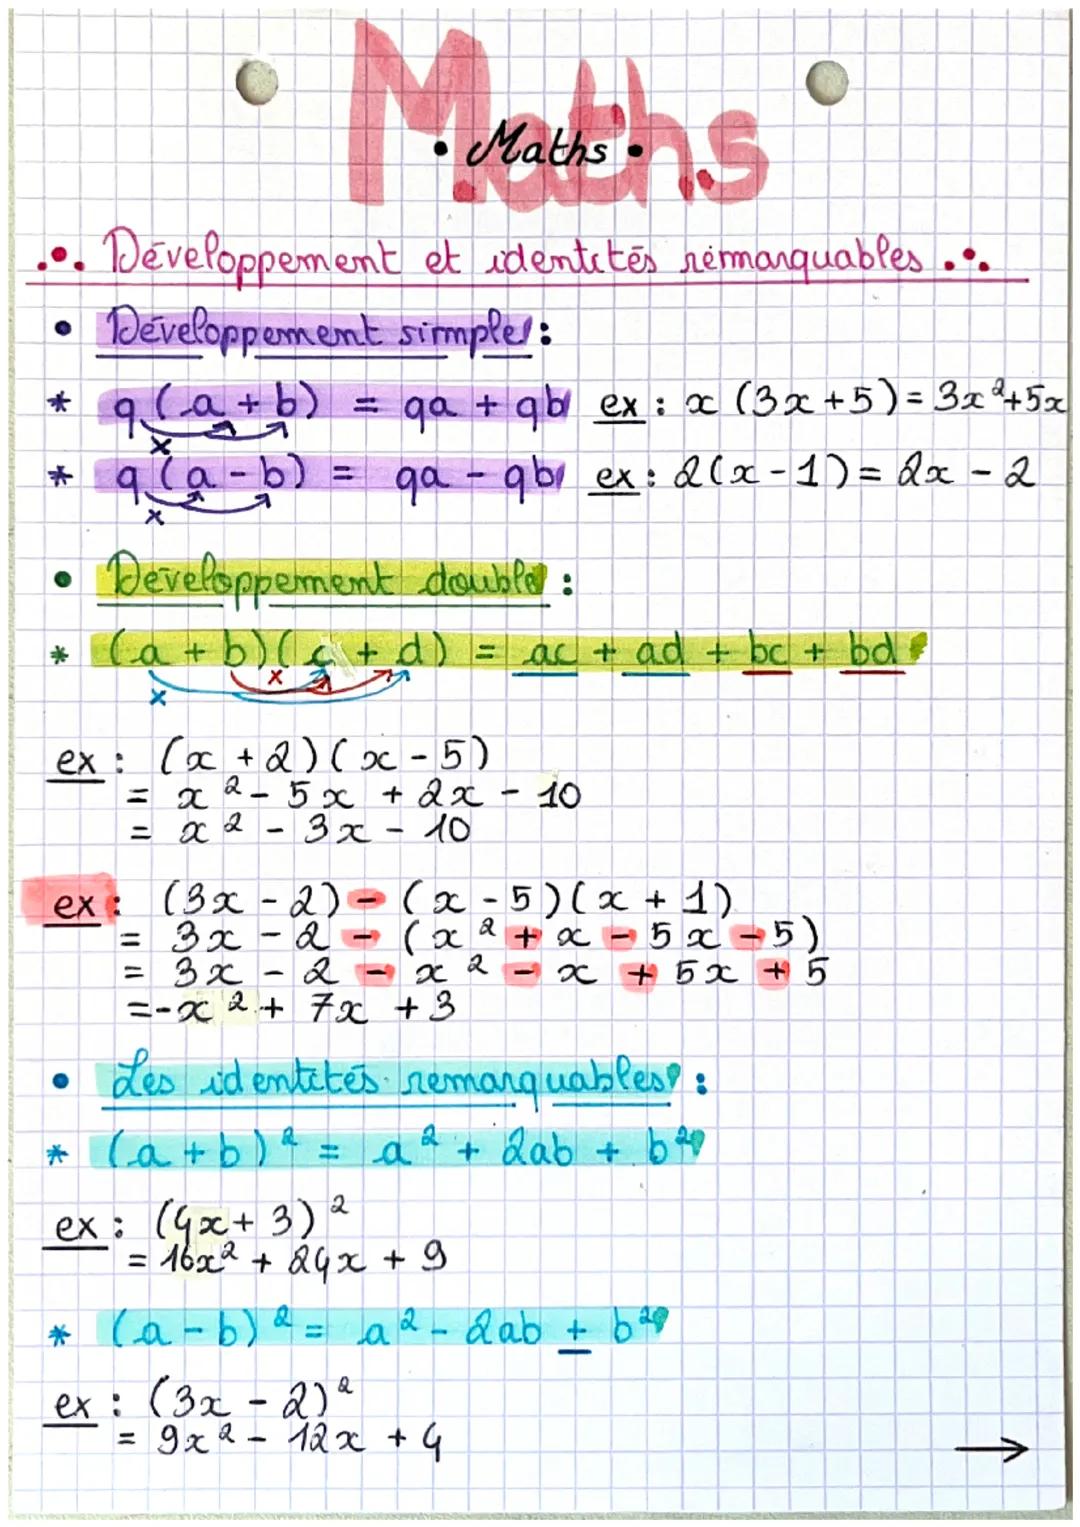 Maths his
Développement et identités remarquables...
Développement simple:
q(a+
(a + b) = ga + gb ex : x (3x+5)= 3x²+5x
ga - qbi ex: 2(x-1)=